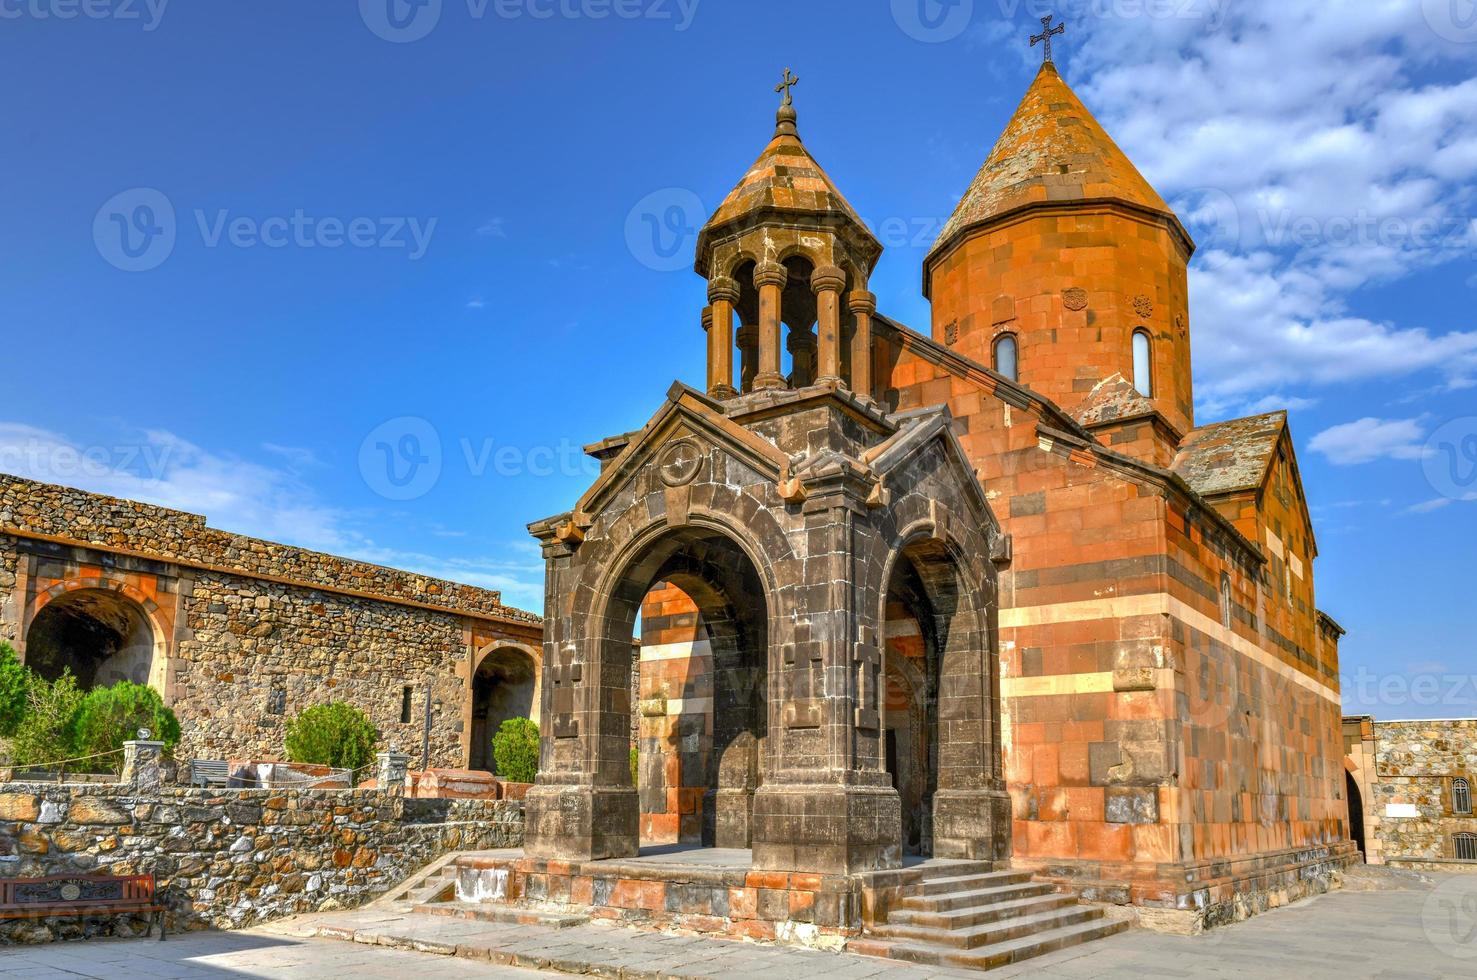 el antiguo monasterio de khor virap en armenia. se encuentra en la llanura de ararat en armenia. foto